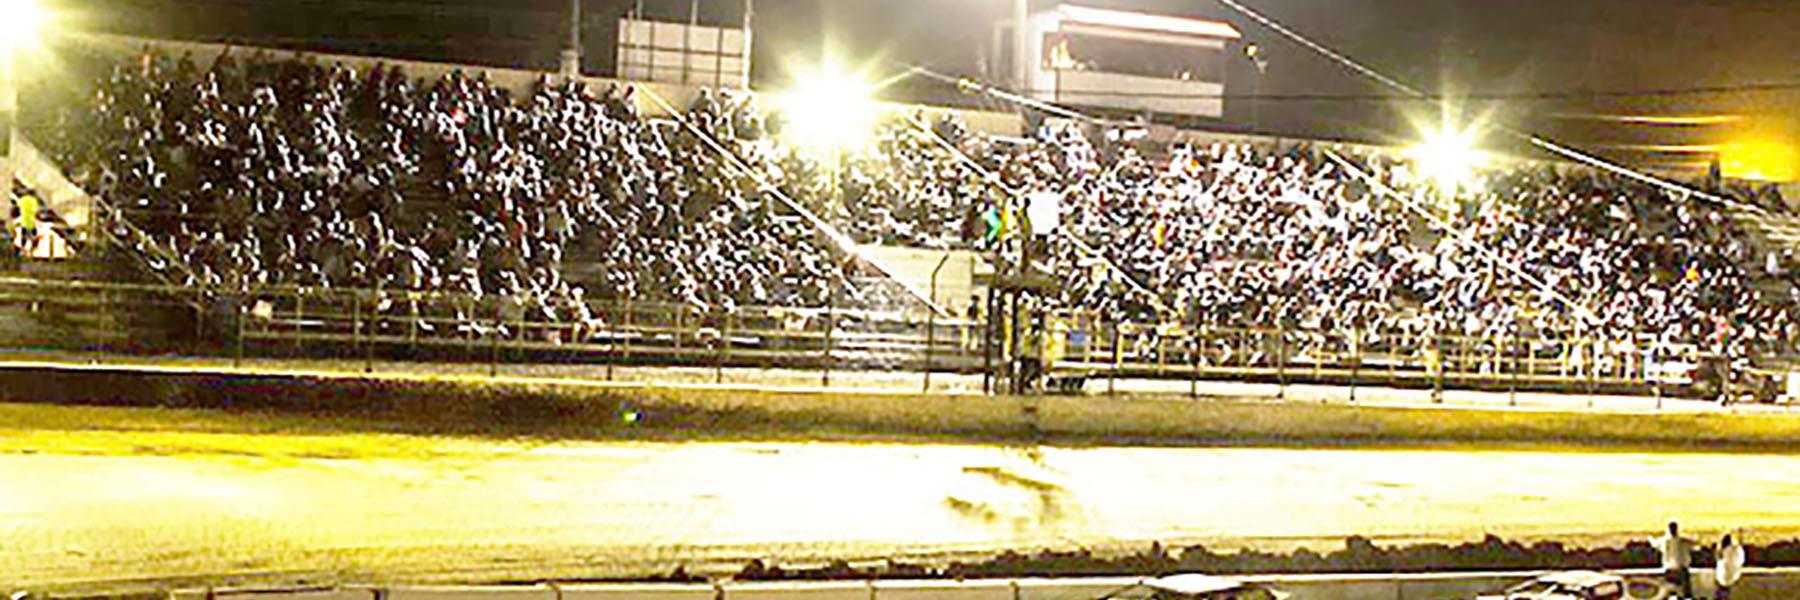 9/26/2020 - Tri-State Speedway